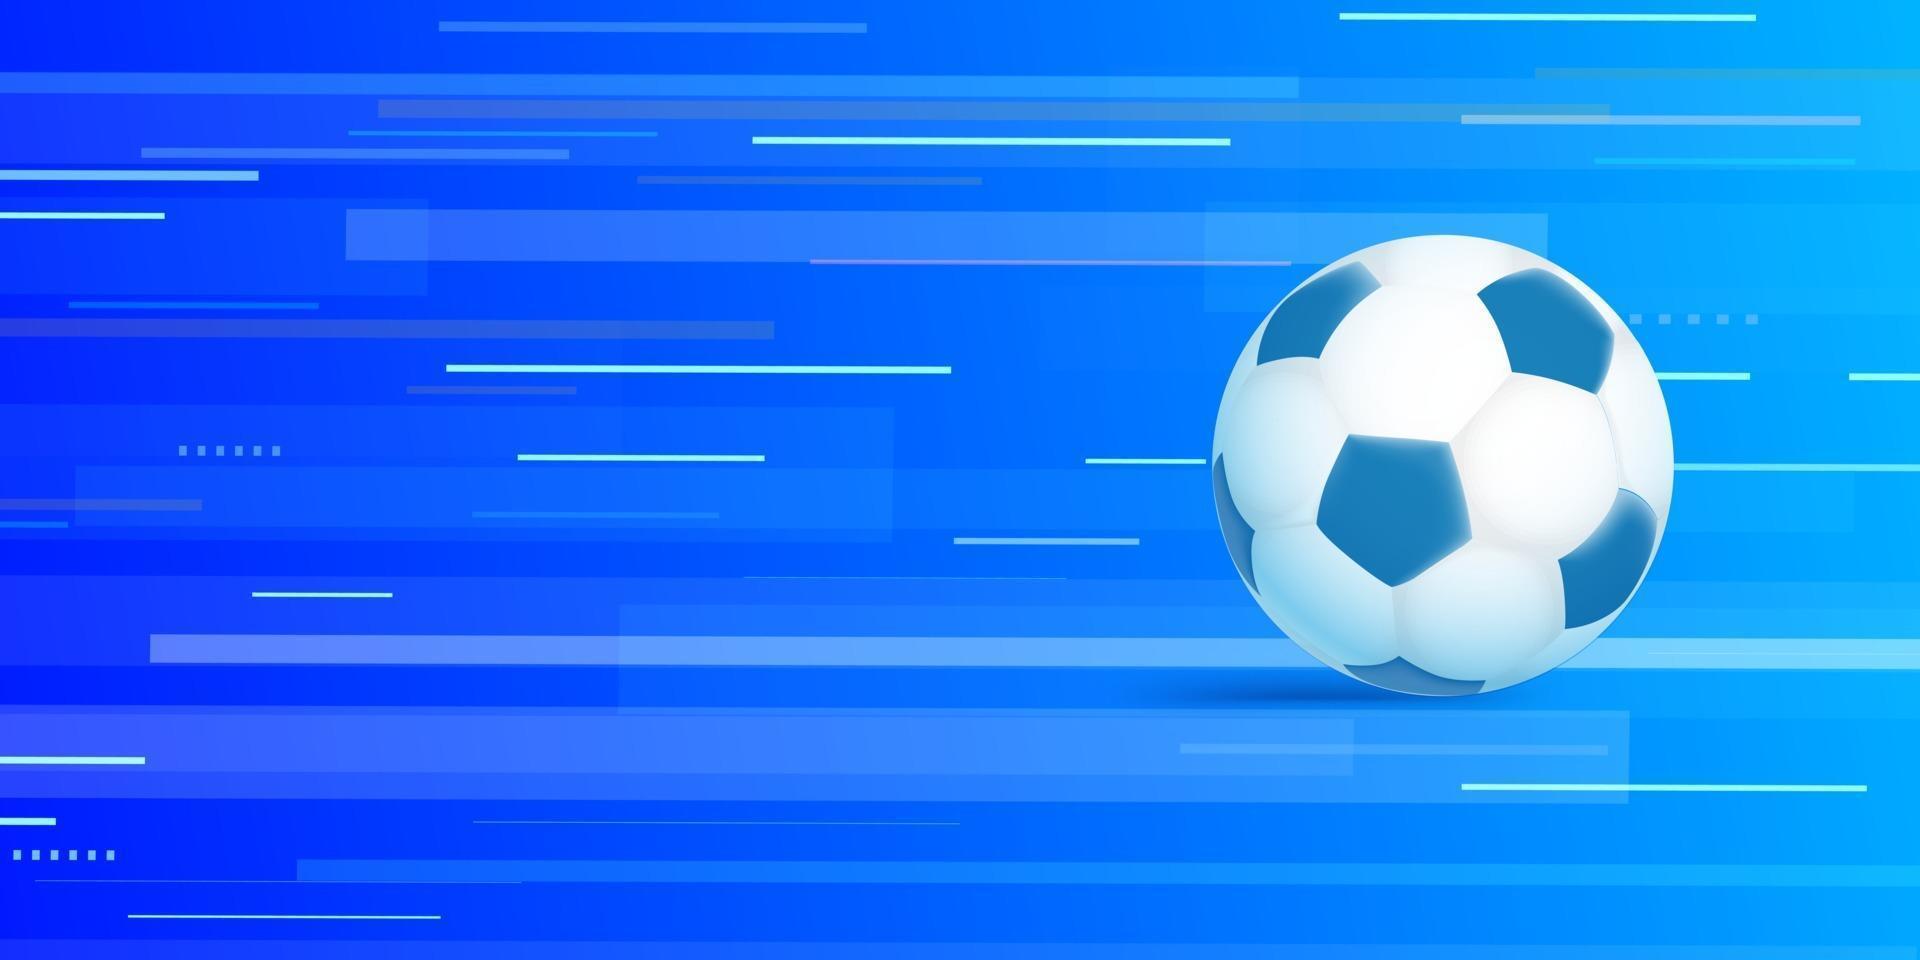 bola de futebol em fundo azul abstrato vetor